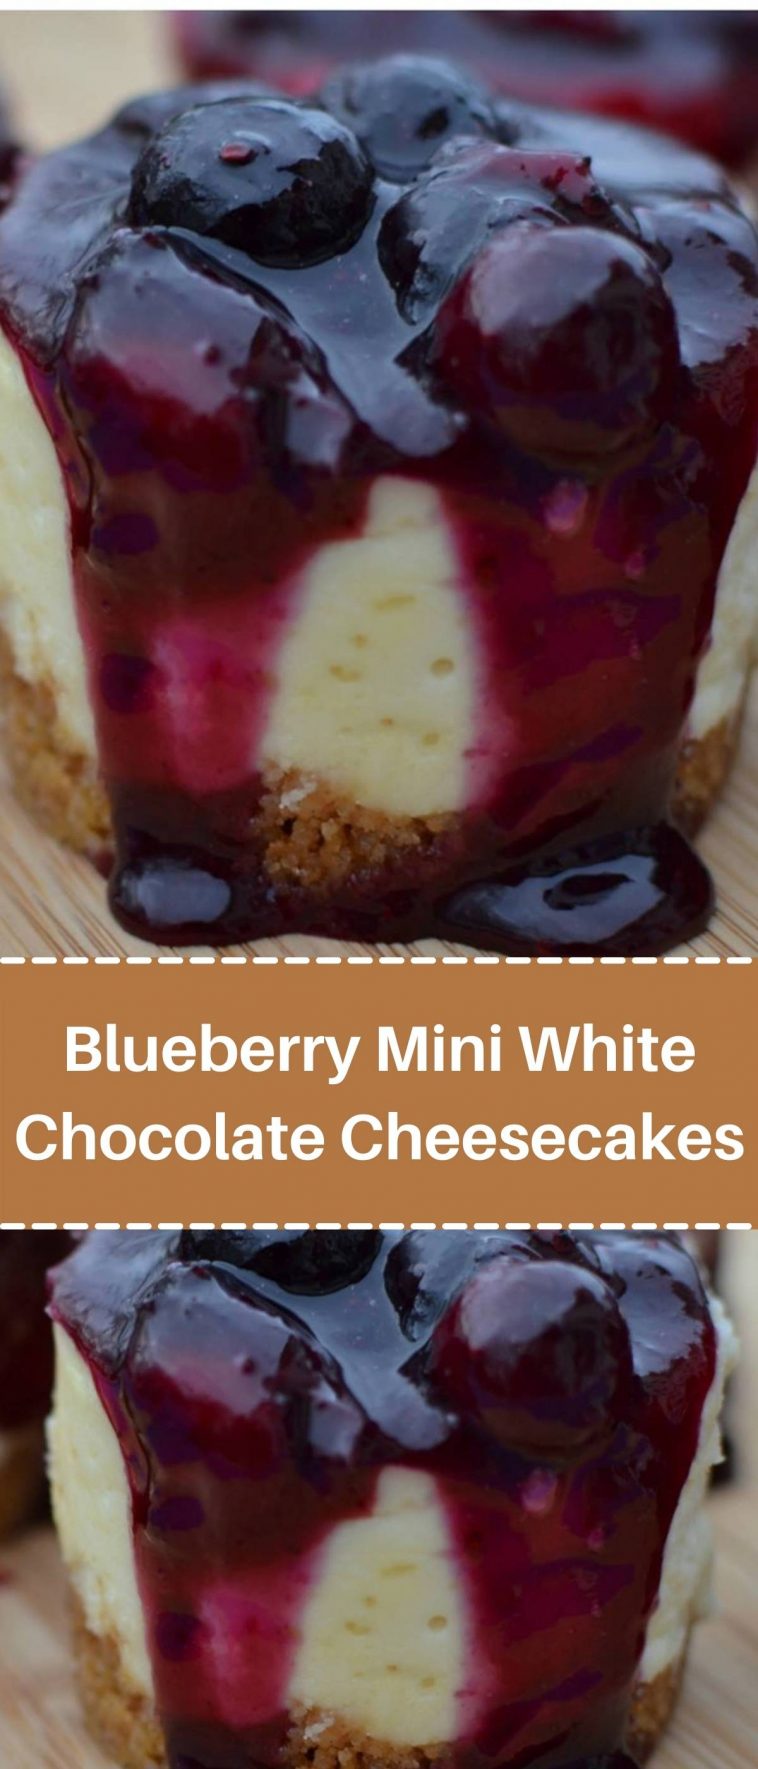 Blueberry Mini White Chocolate Cheesecakes